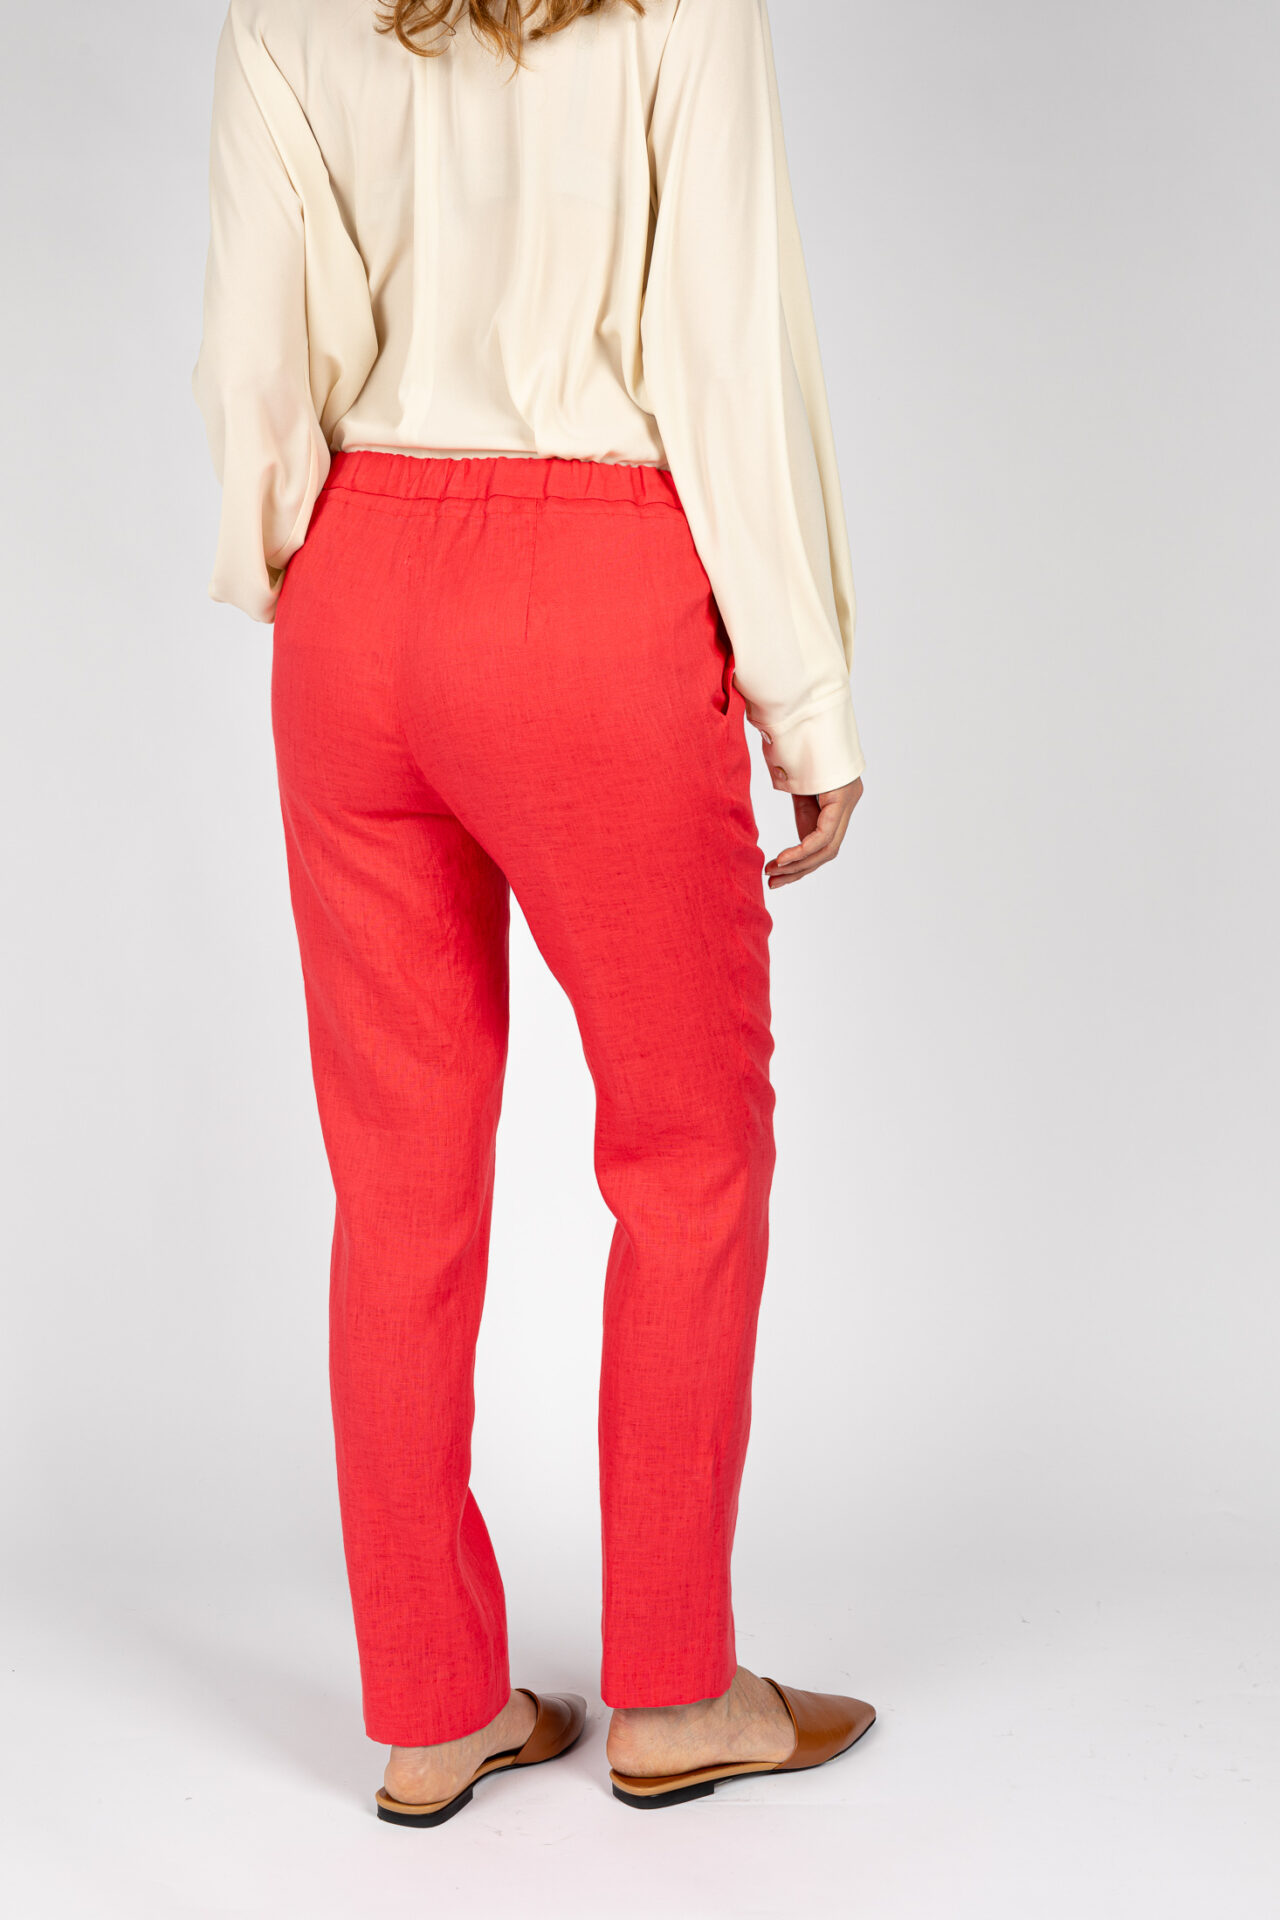 Pantaloni linea morbida, da donna in colore corallo P19667R - 5